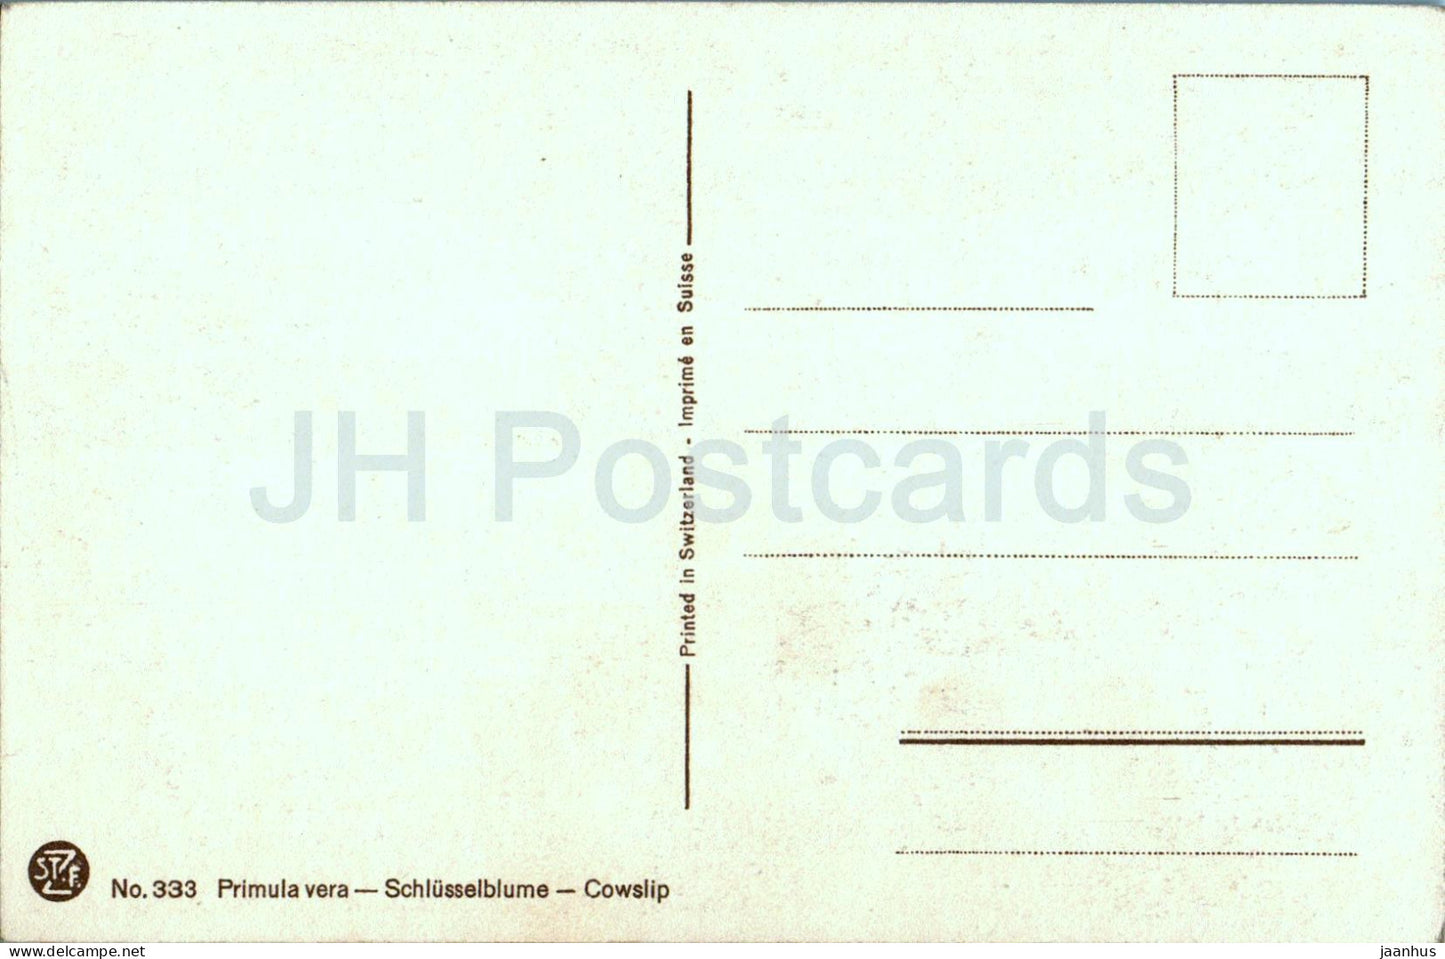 Primula vera - Schlusselblume - Cowslip - 333 - carte postale ancienne - fleurs - Suisse - inutilisé 